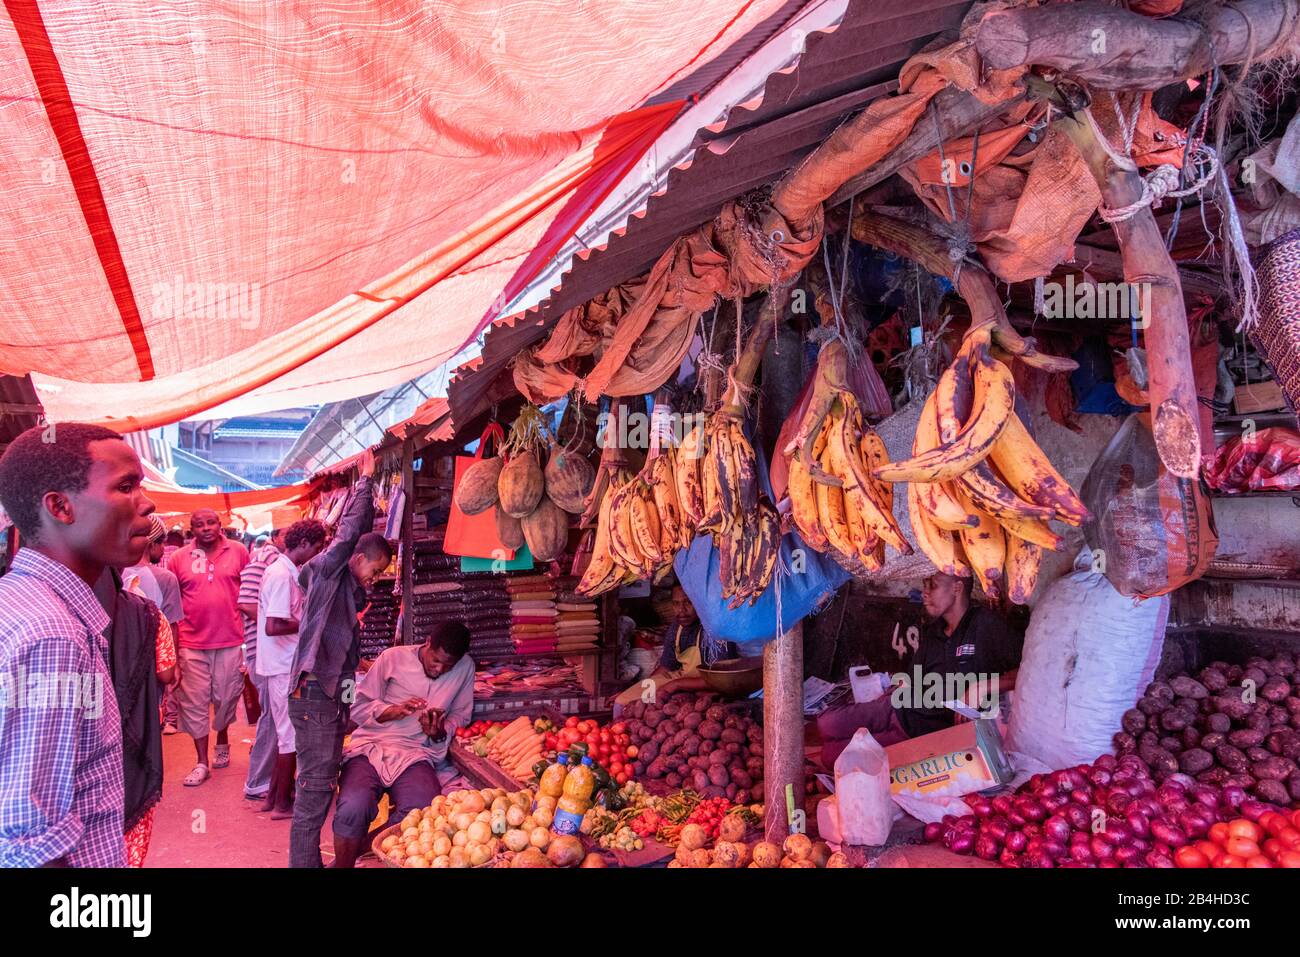 Destinazione Tanzania, Isola Zanzibar: Impressioni da Stone Town, il più antico quartiere di Zanzibar, la capitale dello stato tanzaniano Zanzibar alla fine del Ramadan. Stalla di frutta e verdura. Foto Stock